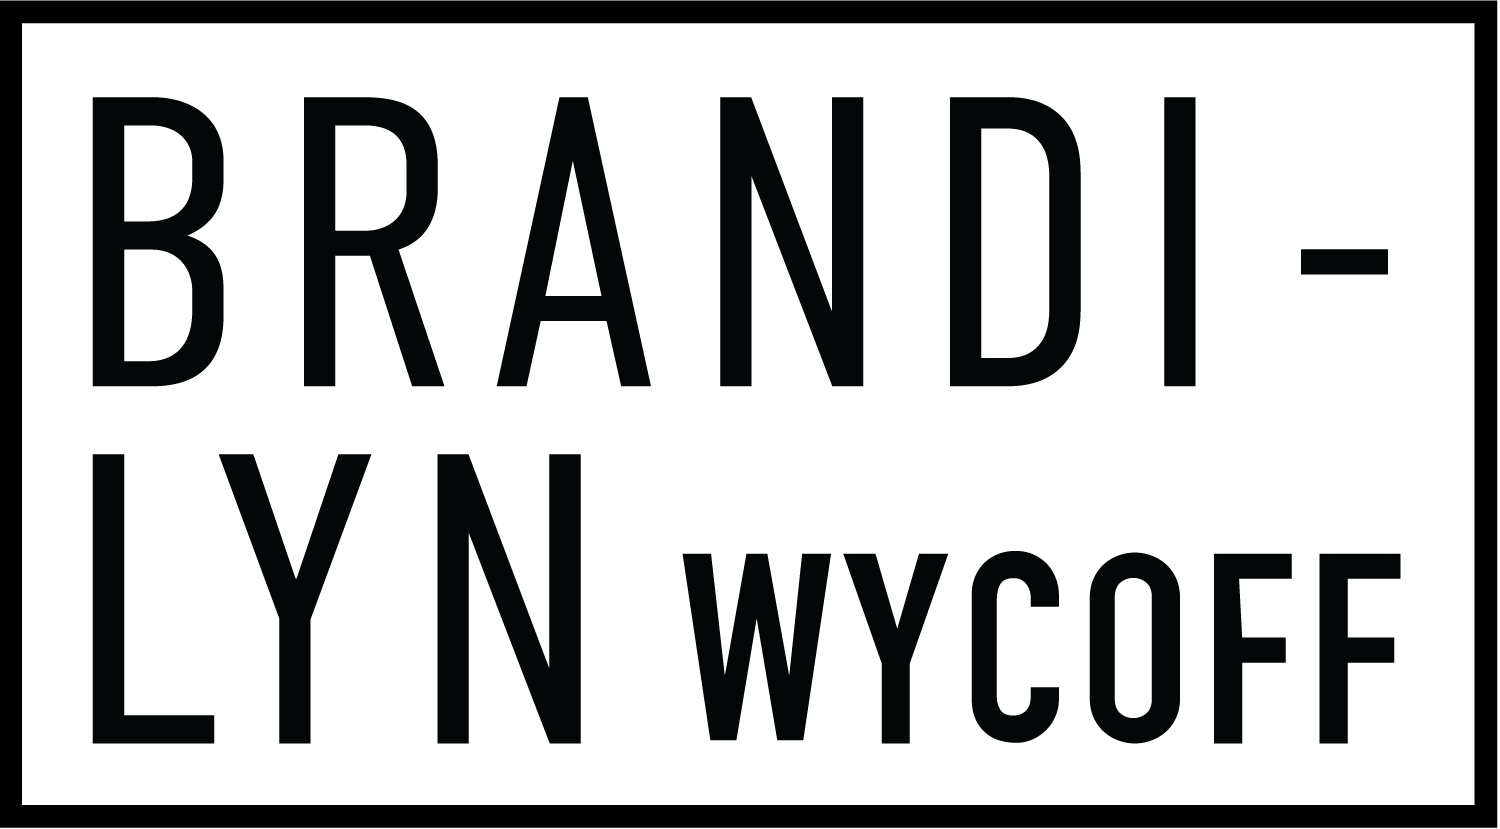 Brandilyn Wycoff